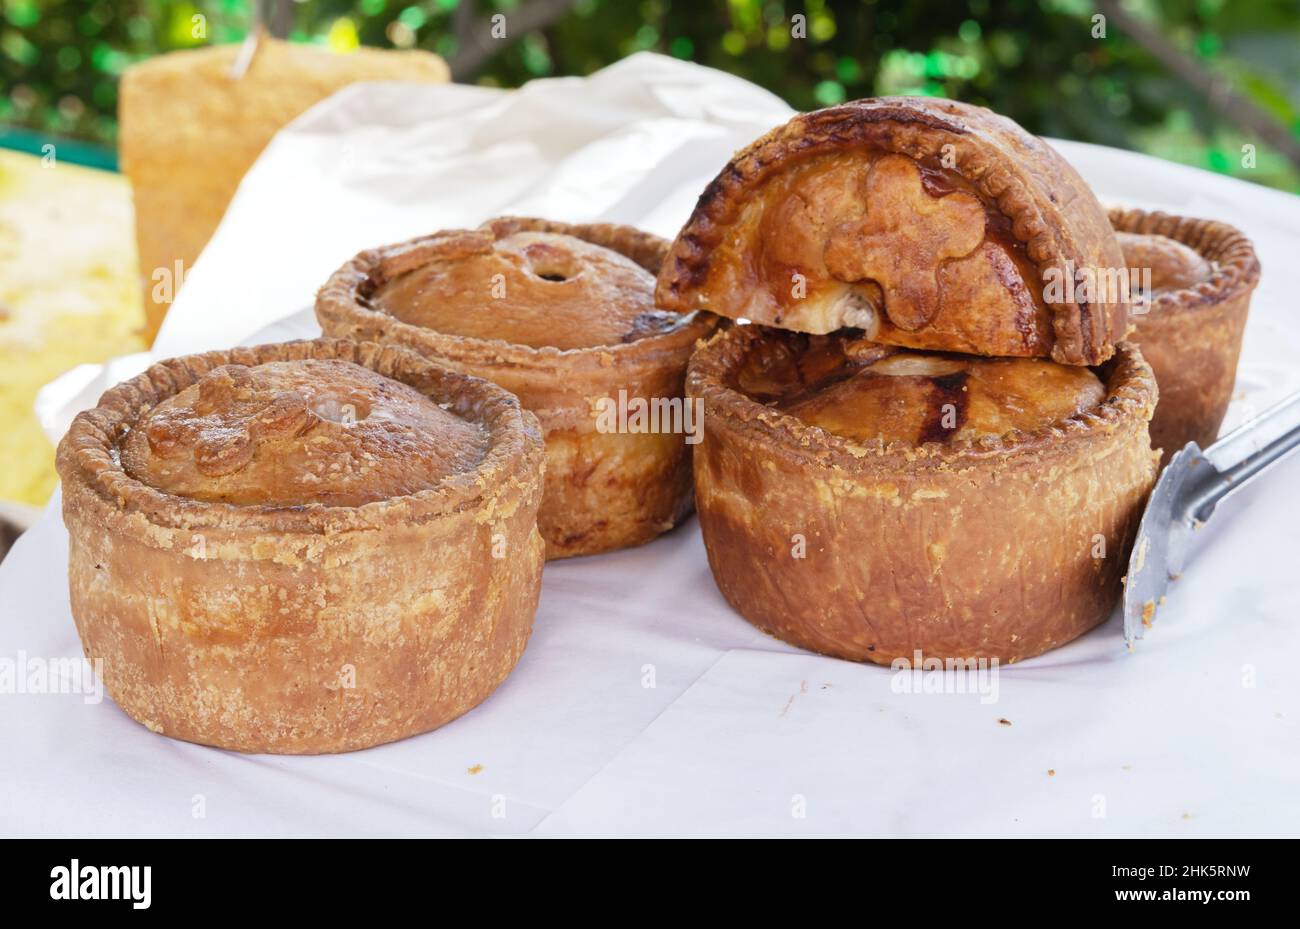 Hausgemachter Pork Pie; mehrere hausgemachte Schweinefleischpasteten auf einem Tisch - traditionelle englische Küche, aber ungesunde Ernährung, um im Übermaß zu essen, Hertfordshire England UK Stockfoto